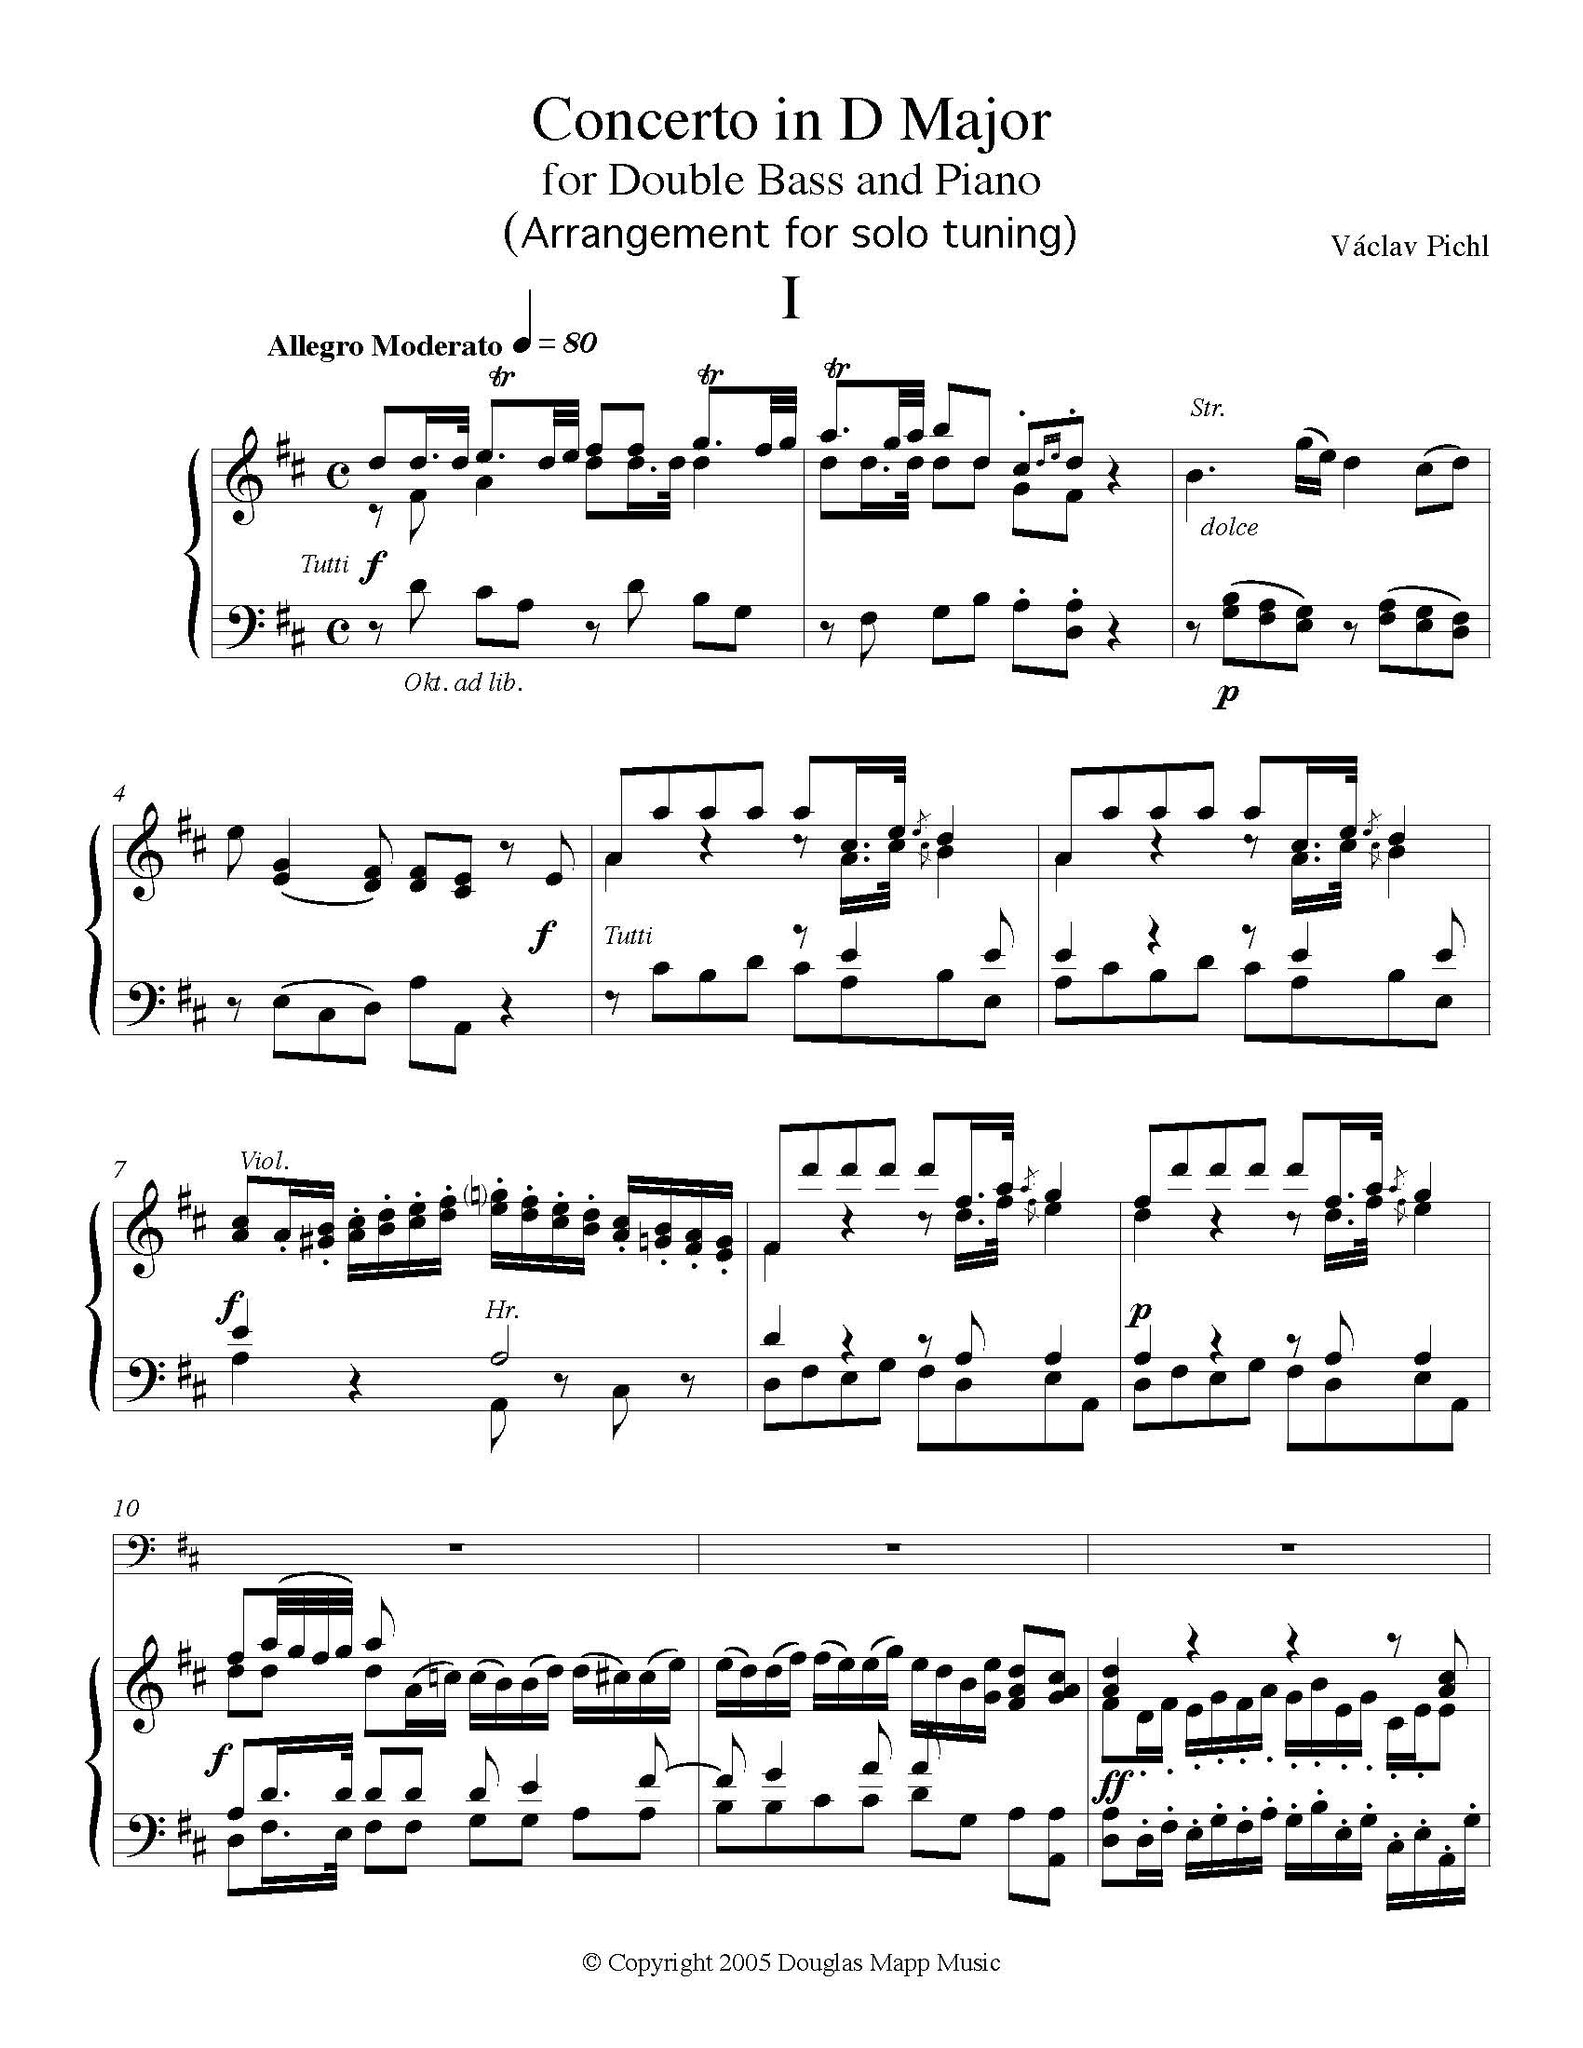 Pichl Concerto solo tuning page 1